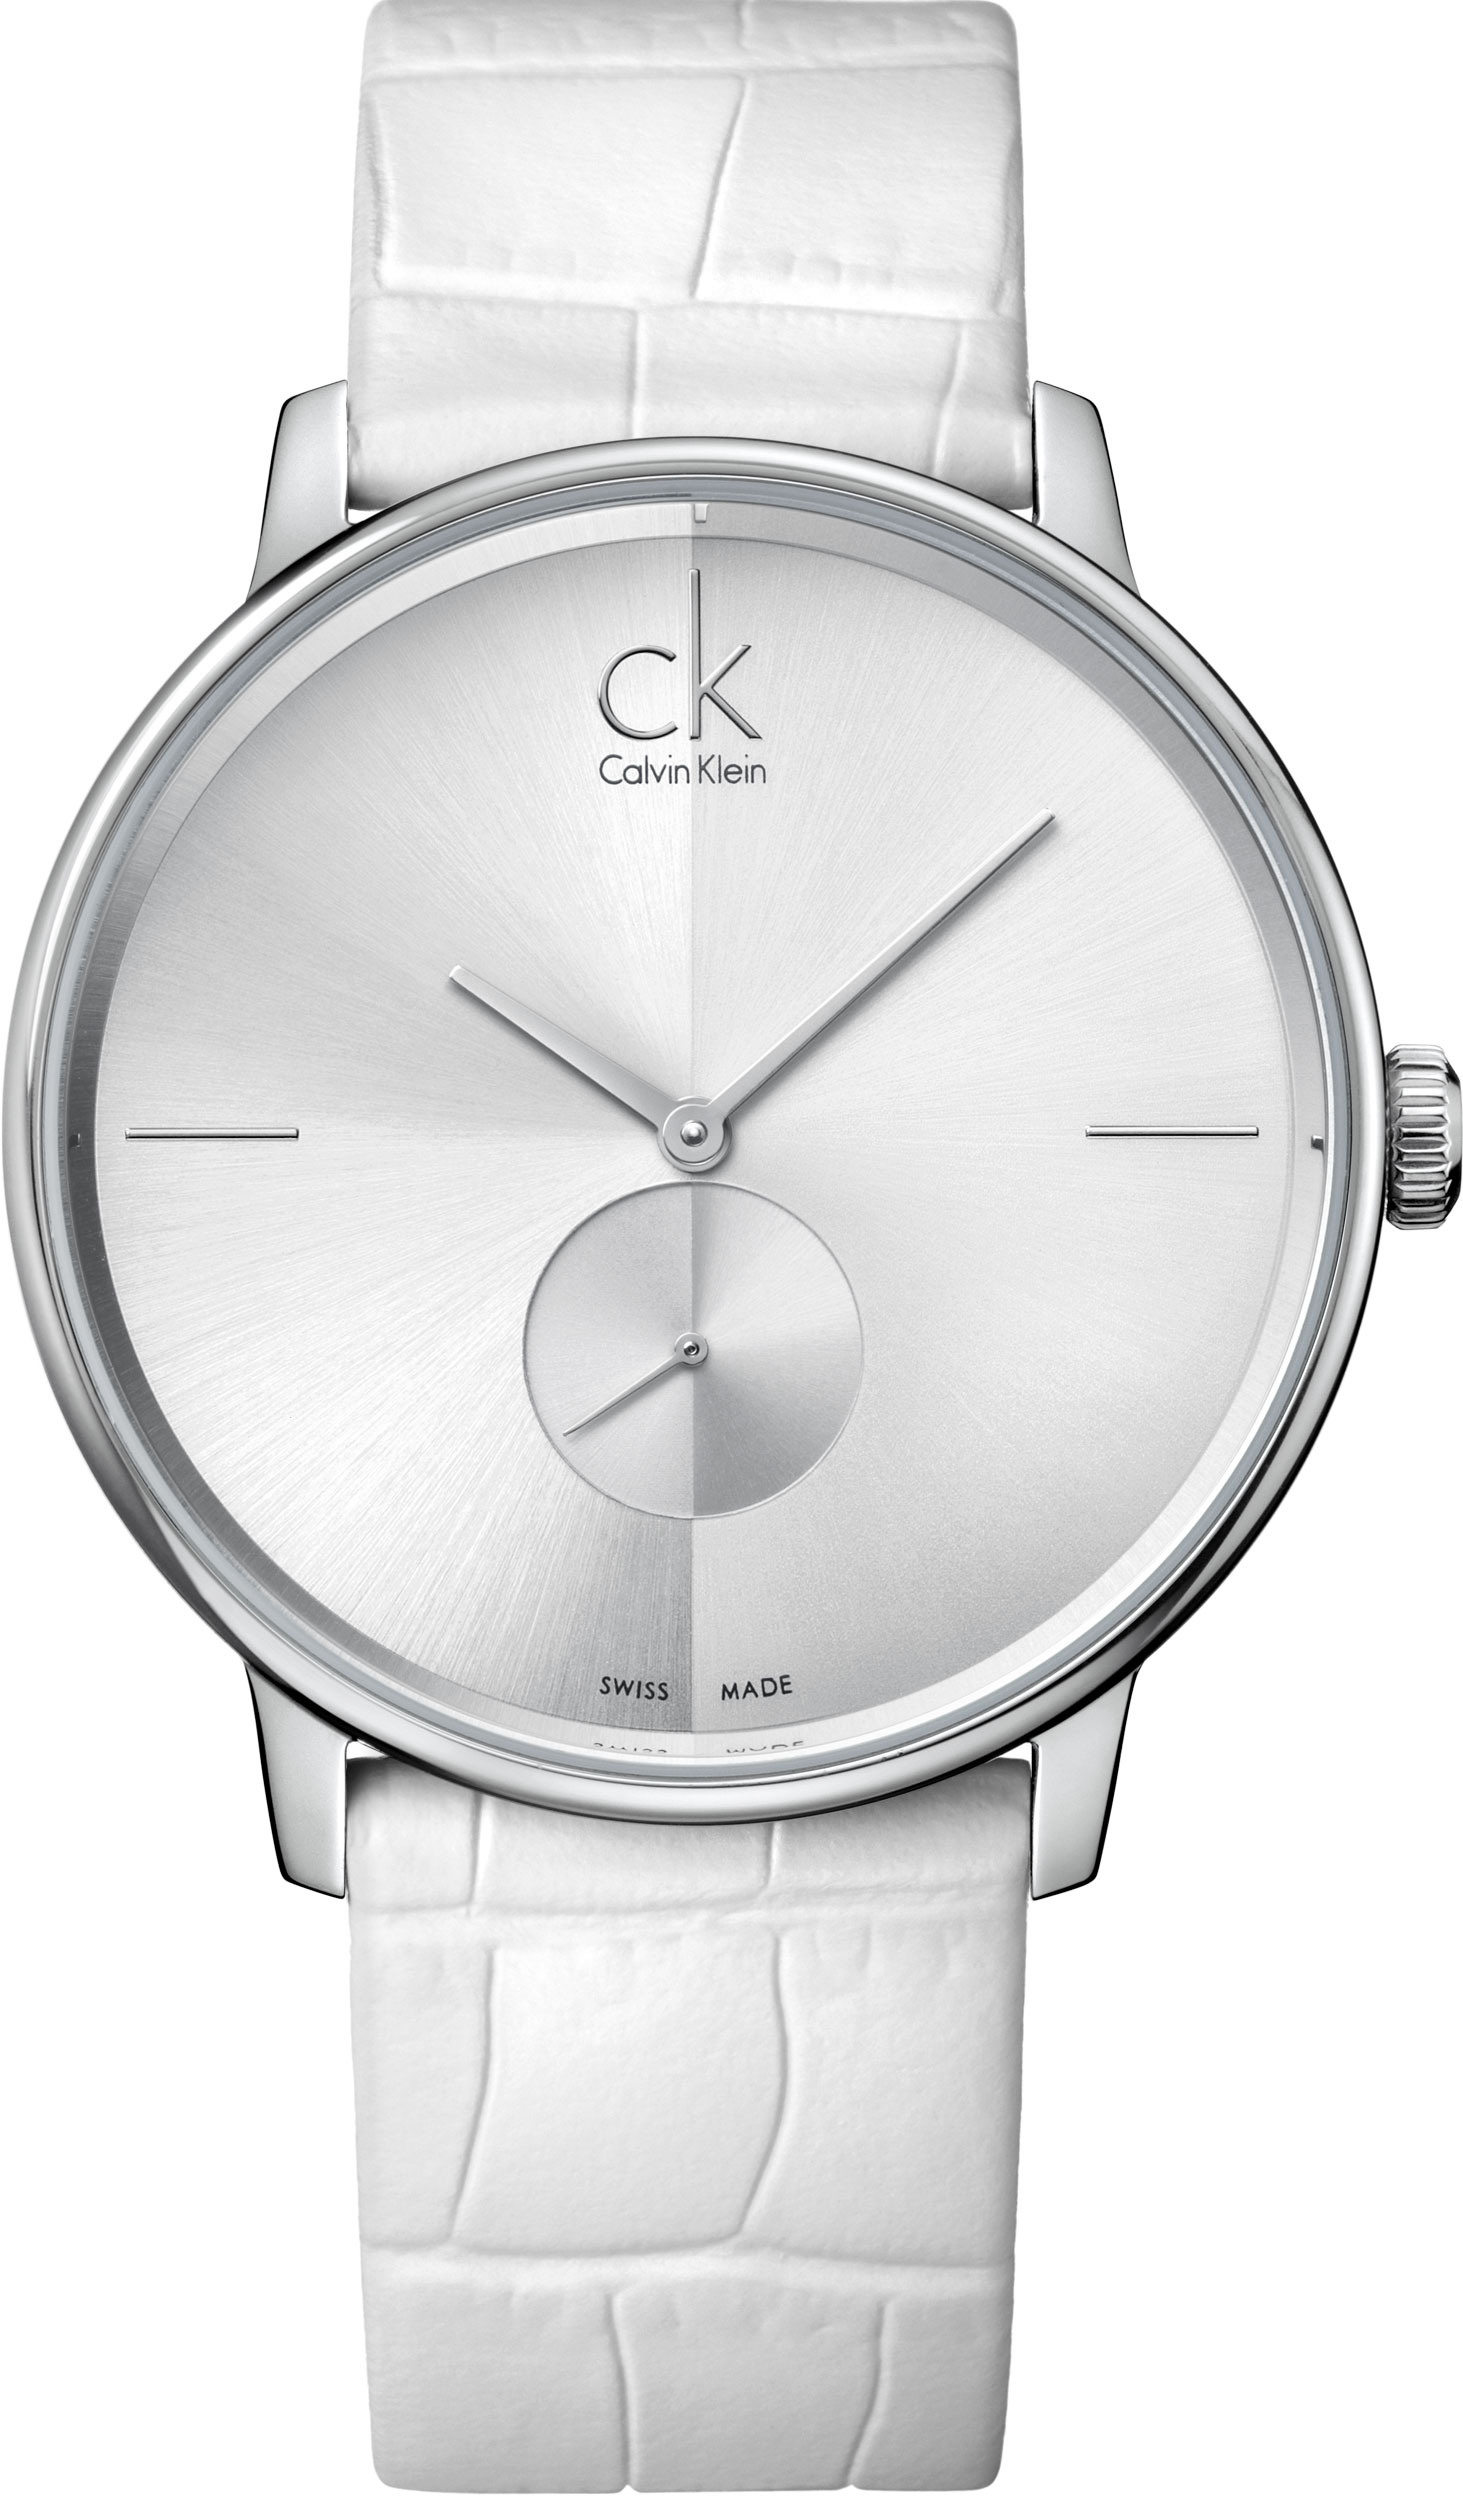 ck original watch